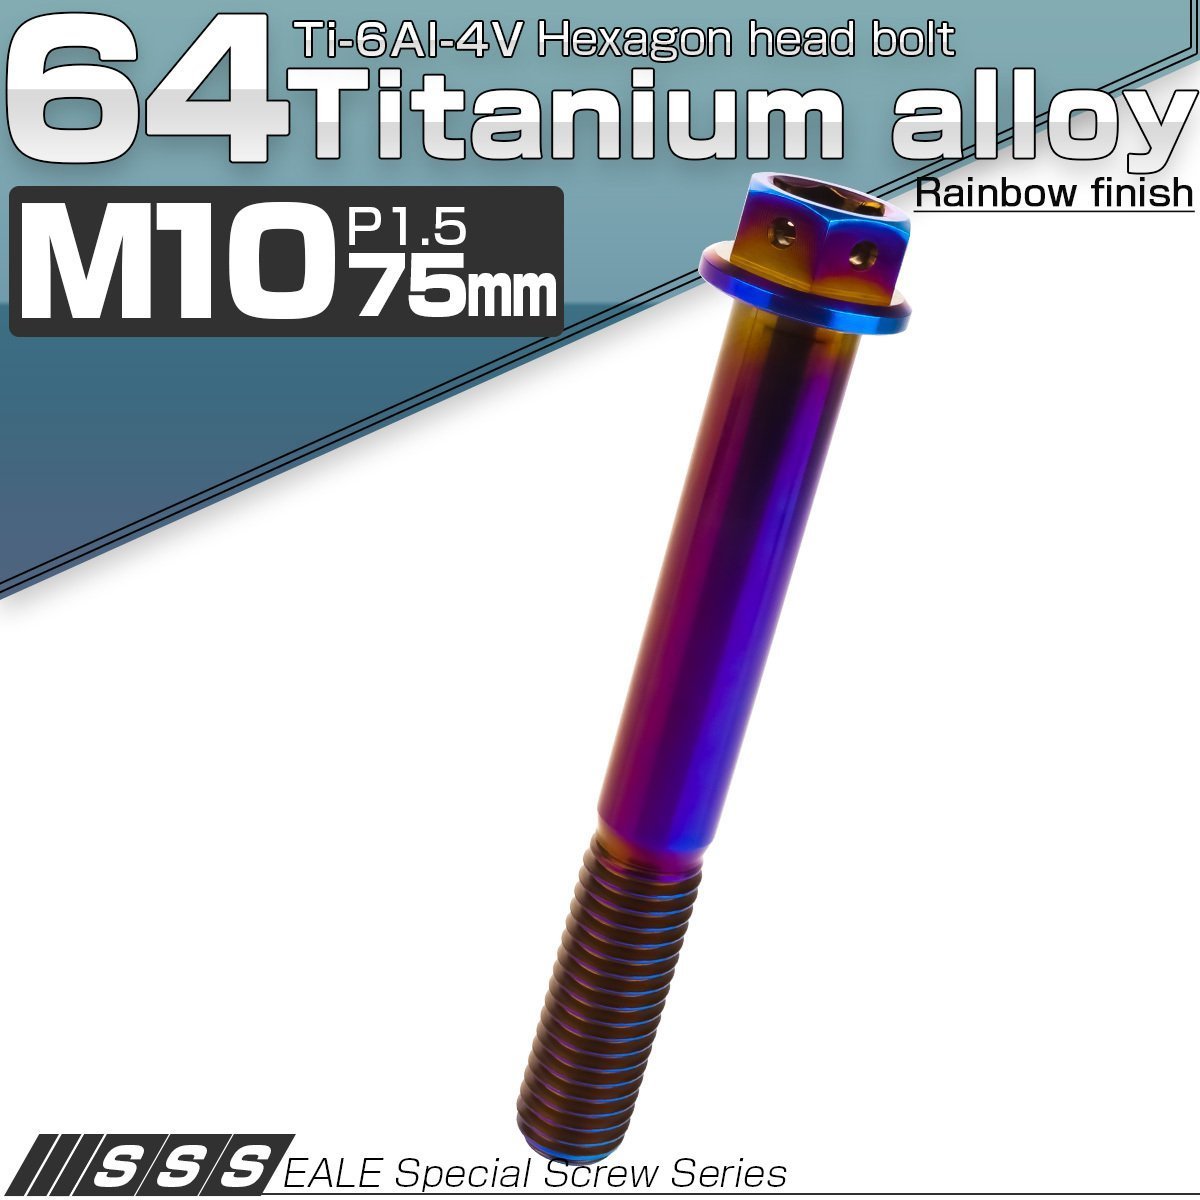 64チタン M10×75mm P1.5 デザイン六角ボルト 六角穴付きボルト フランジ付き 焼きチタン風 Ti6Al-4V JA1095_画像1